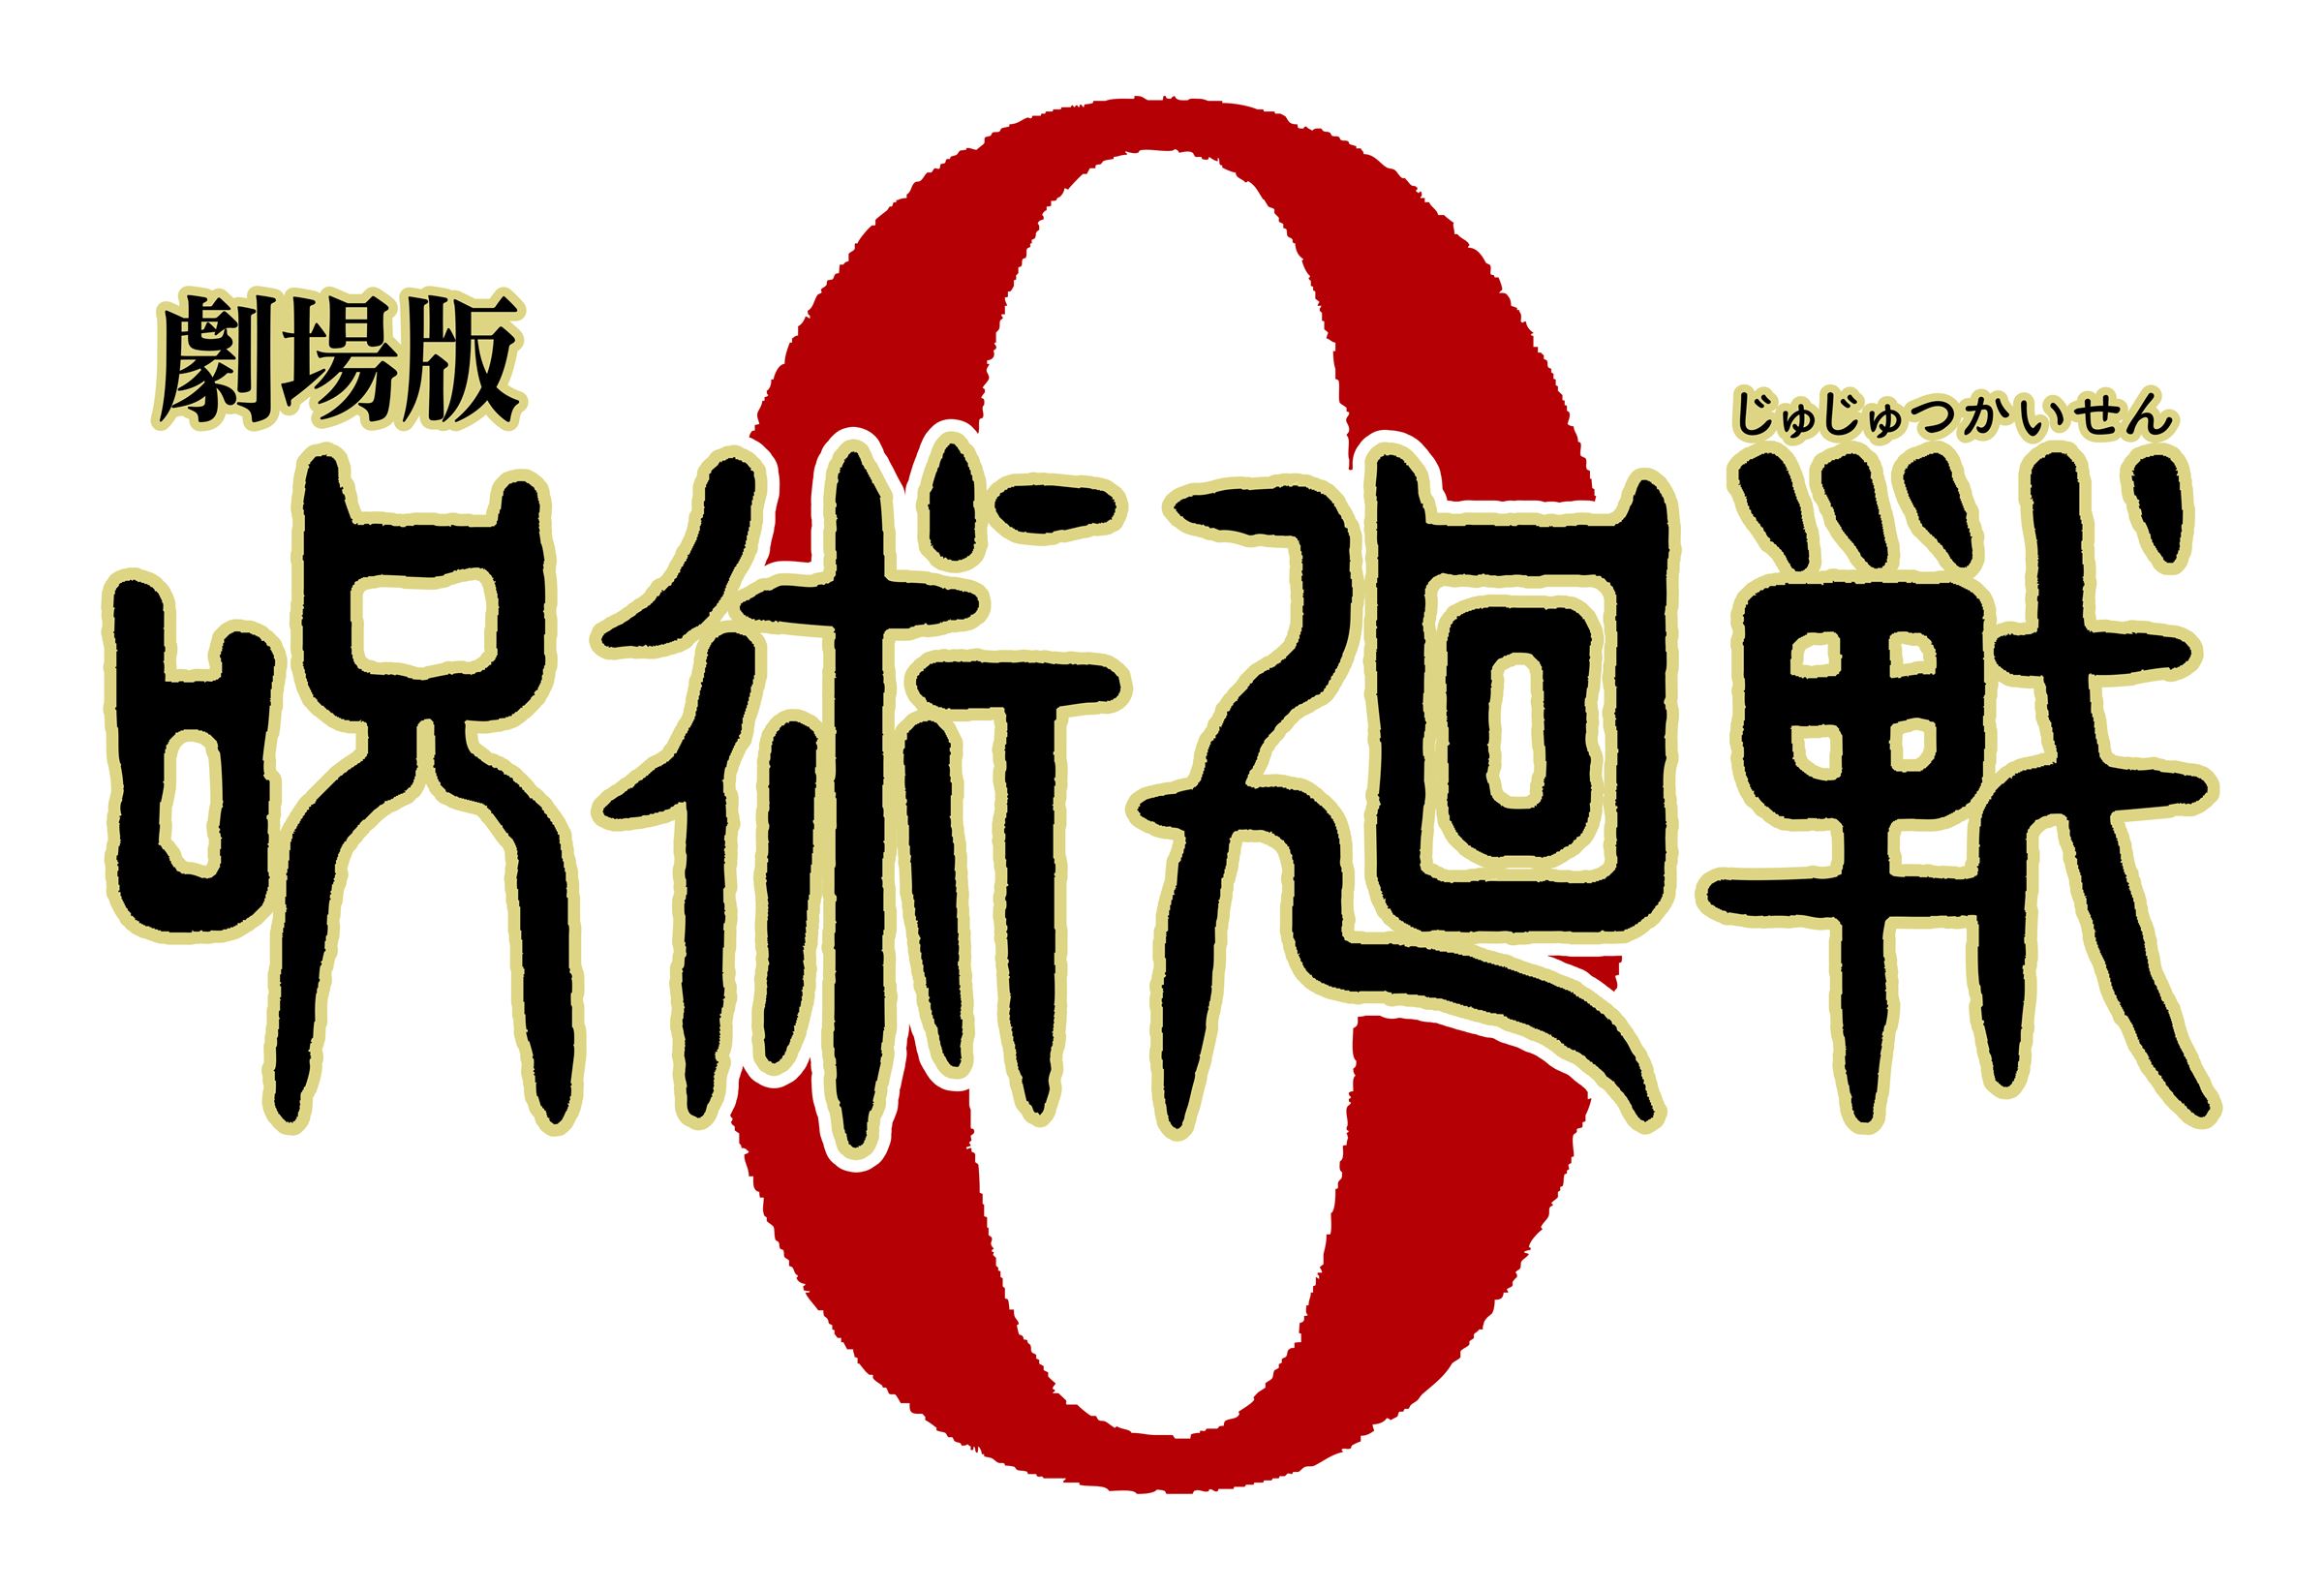 『劇場版 呪術廻戦0』ロゴ (C)芥見下々／集英社・呪術廻戦製作委員